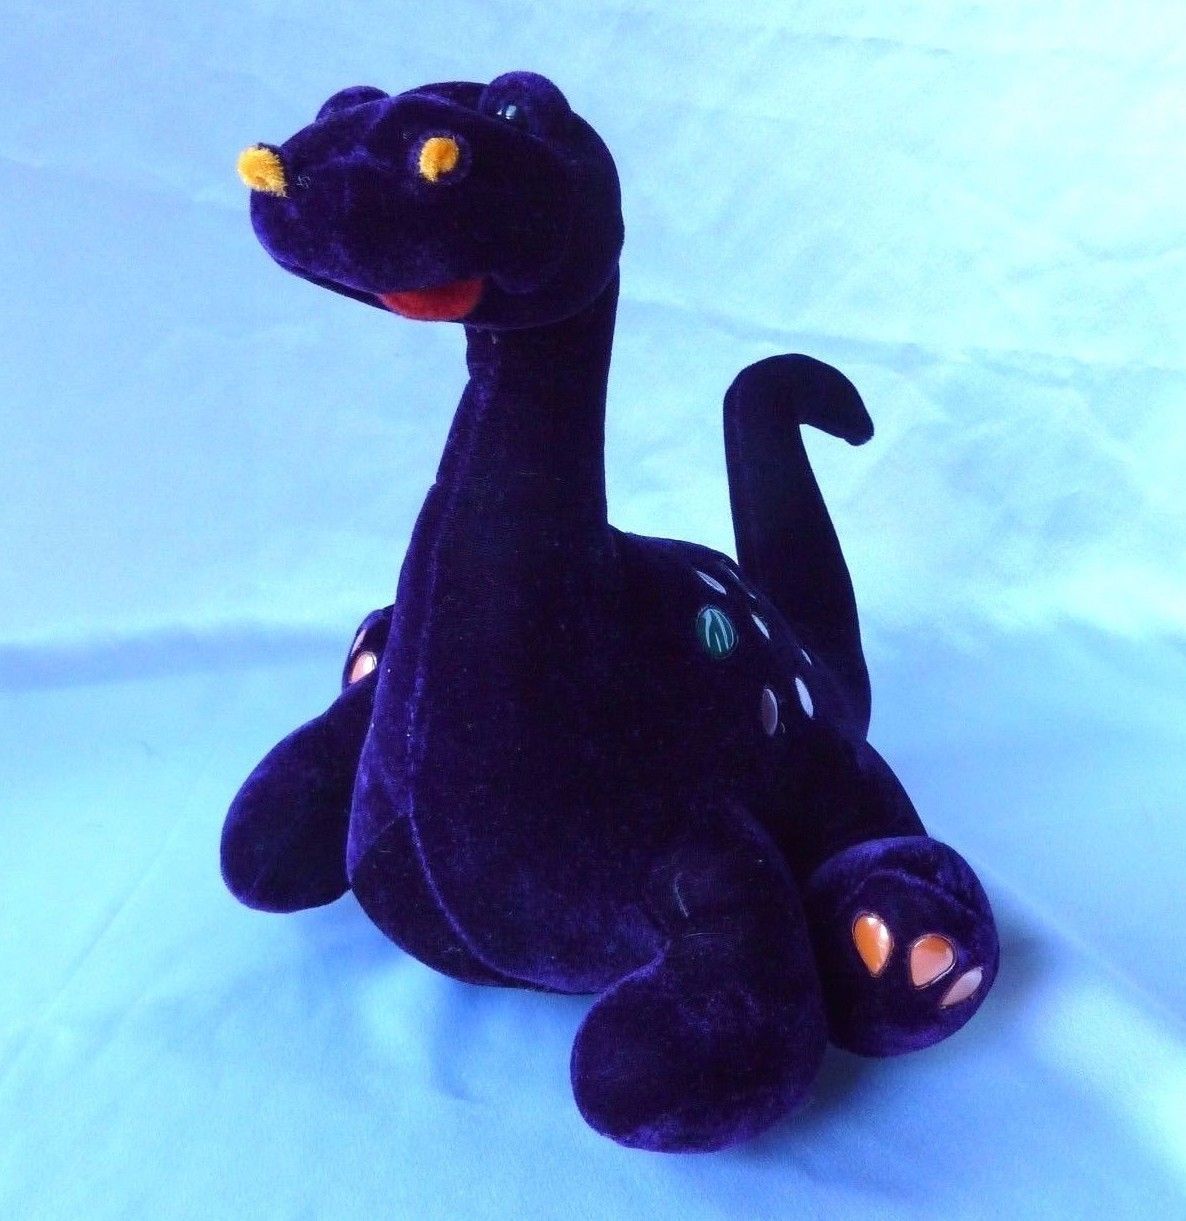 purple dinosaur stuffed animal